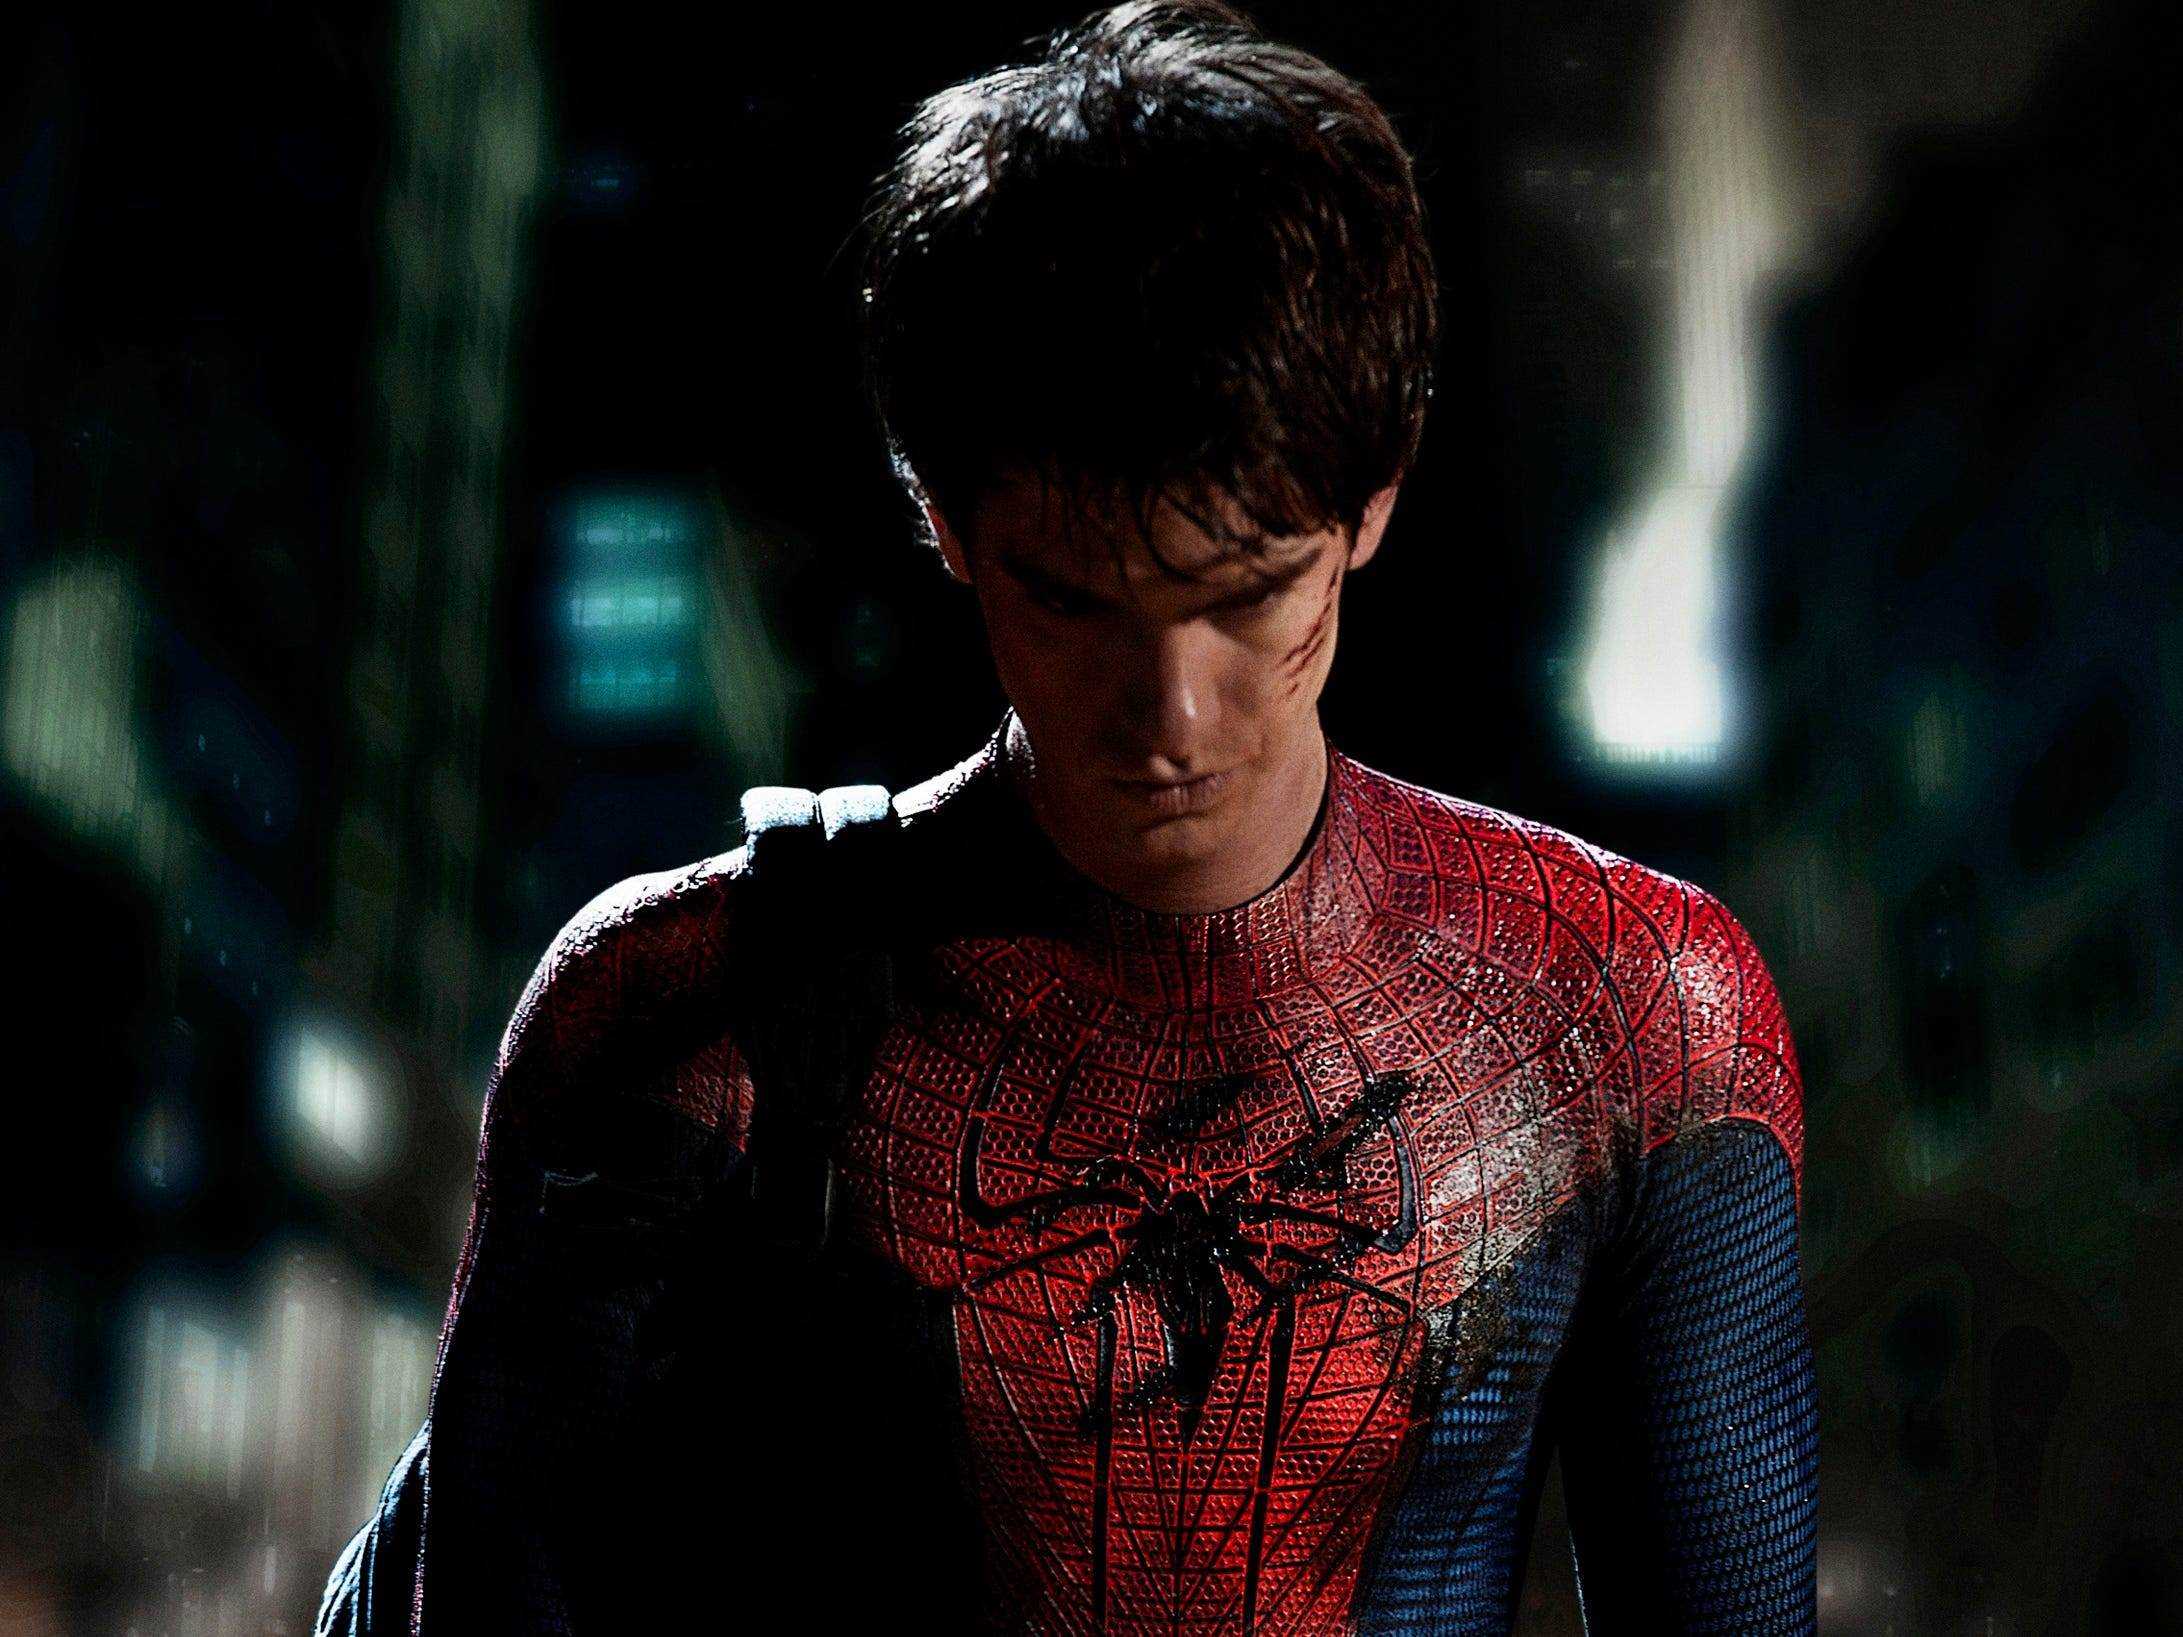 Das erste Bild von Andrew Garfield als Spider-Man aus dem Jahr 2011.